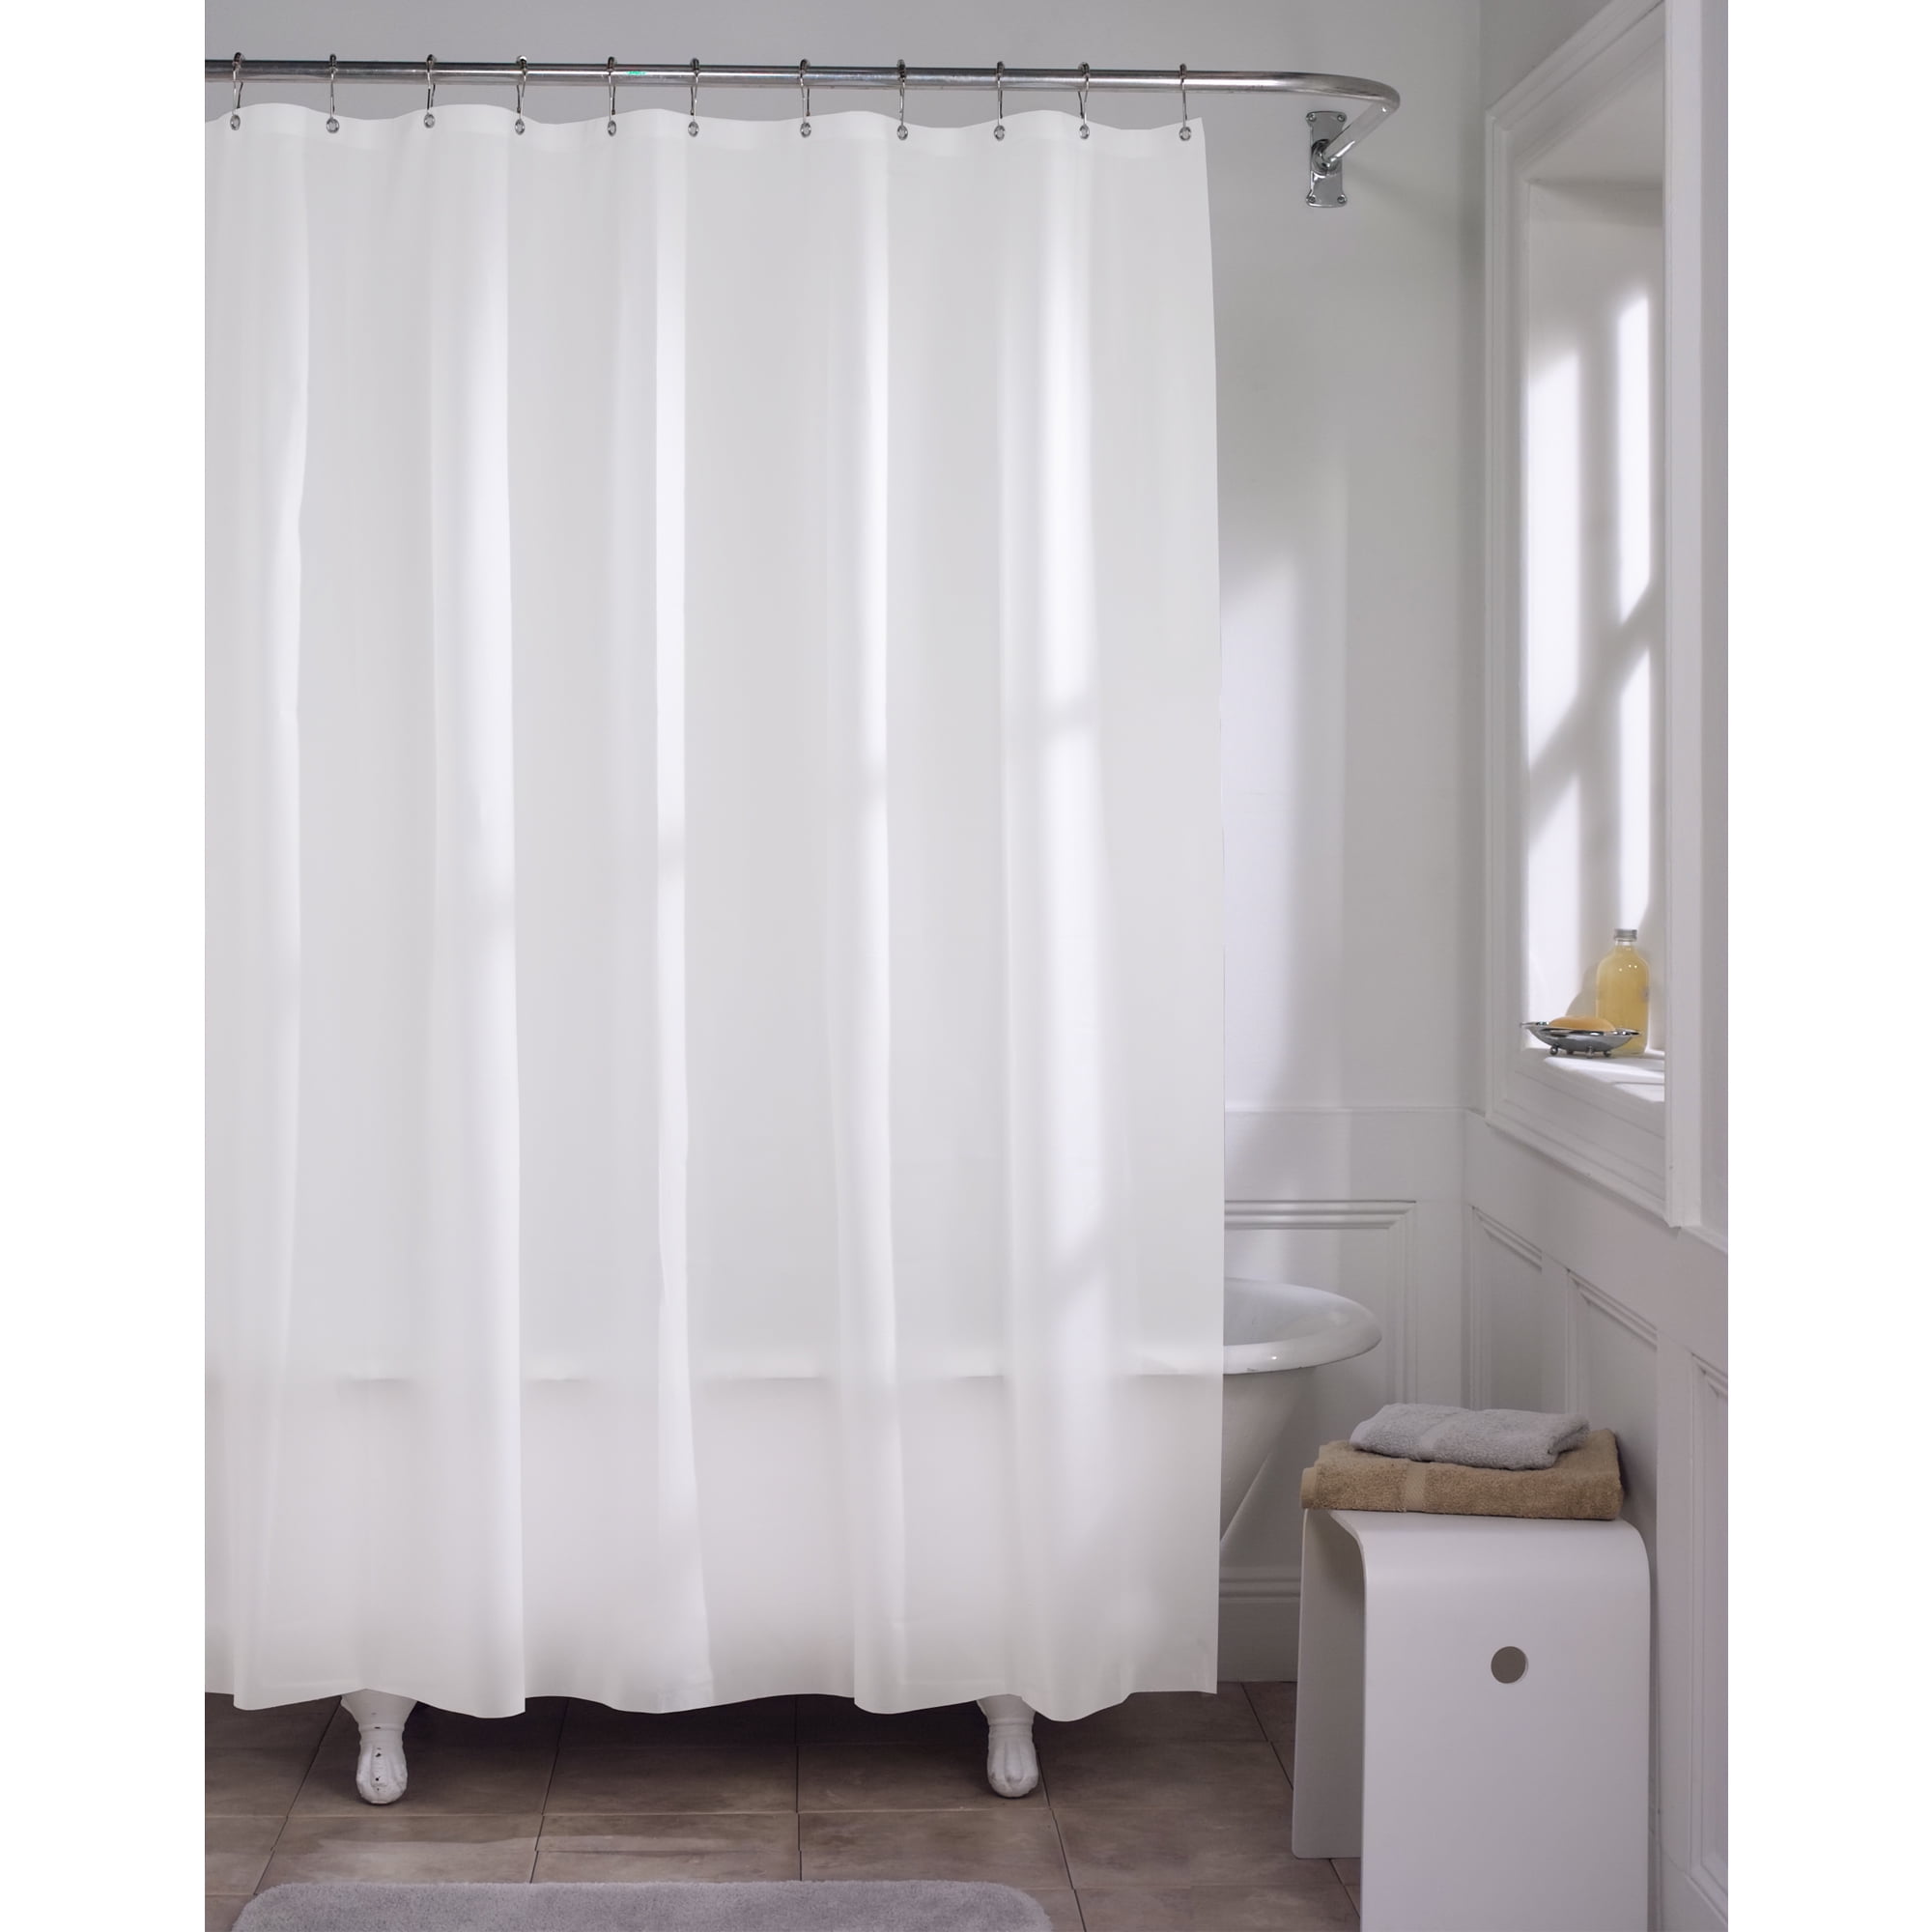 Beige Maytex Super Heavyweight Premium 10 Gauge Shower Curtain Liner 